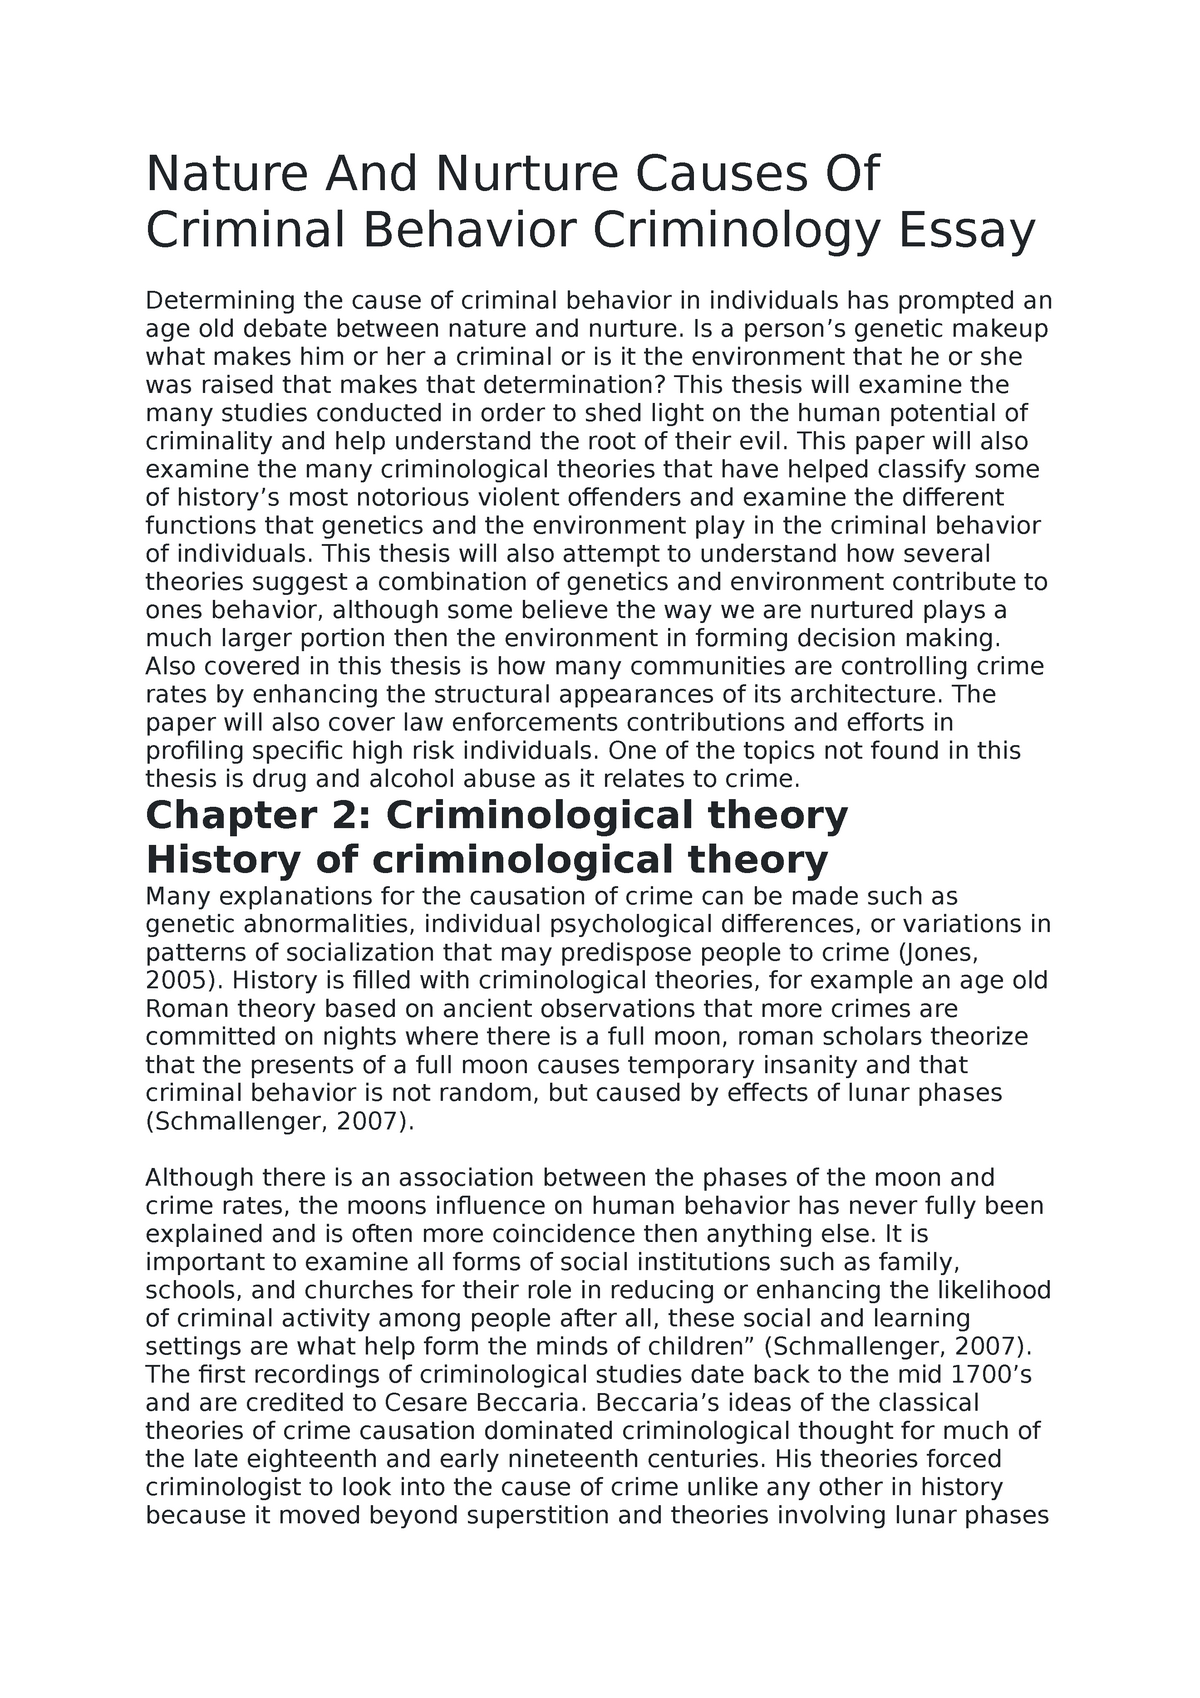 essay about criminal behavior